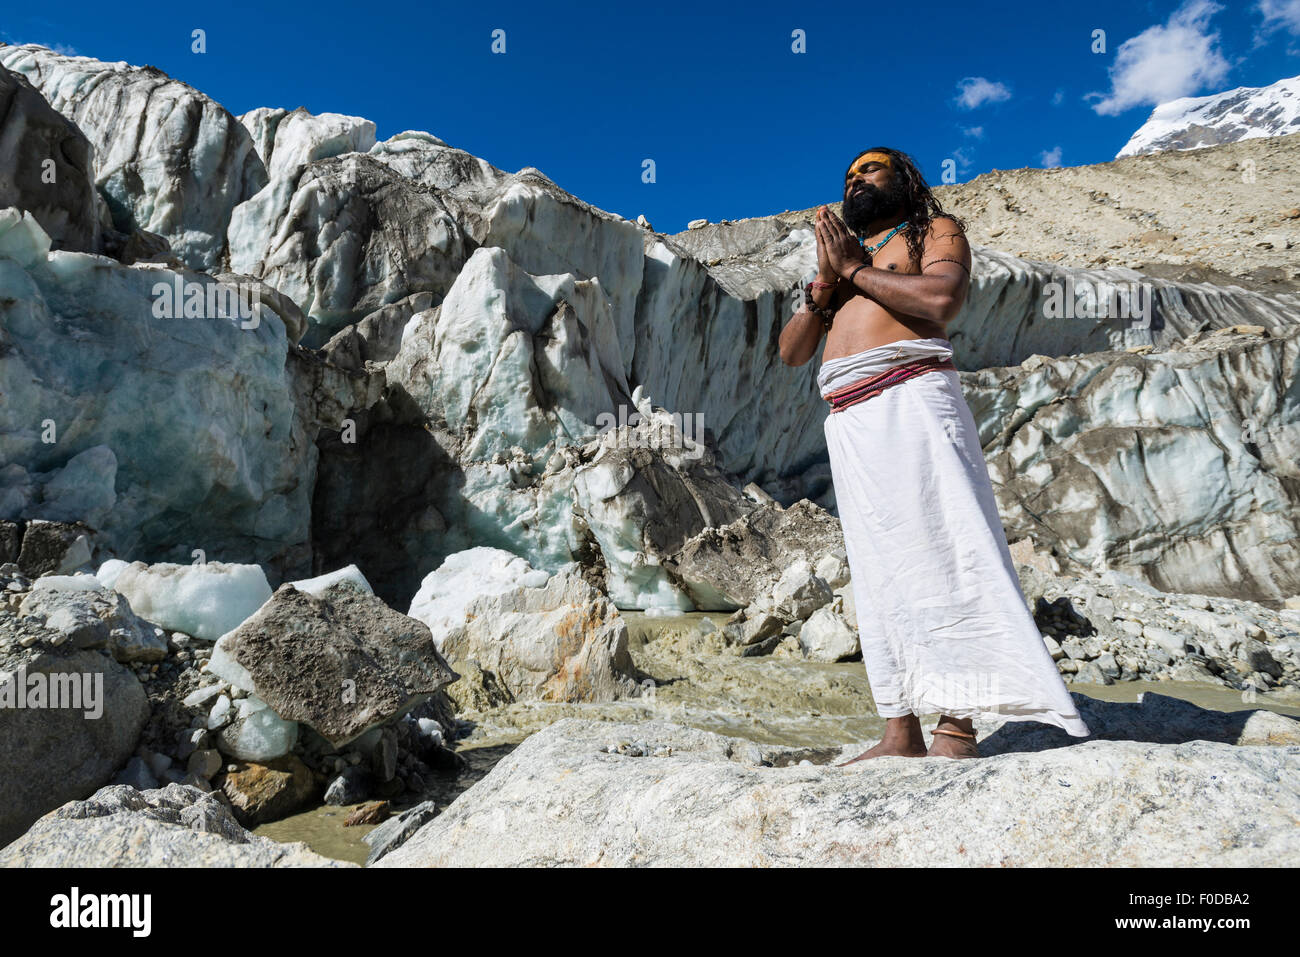 Un Sadhu, saint homme, est debout et priant sur un rocher à Gaumukh, la principale source de la sainte gange, Gangotri, Uttarakhand Banque D'Images